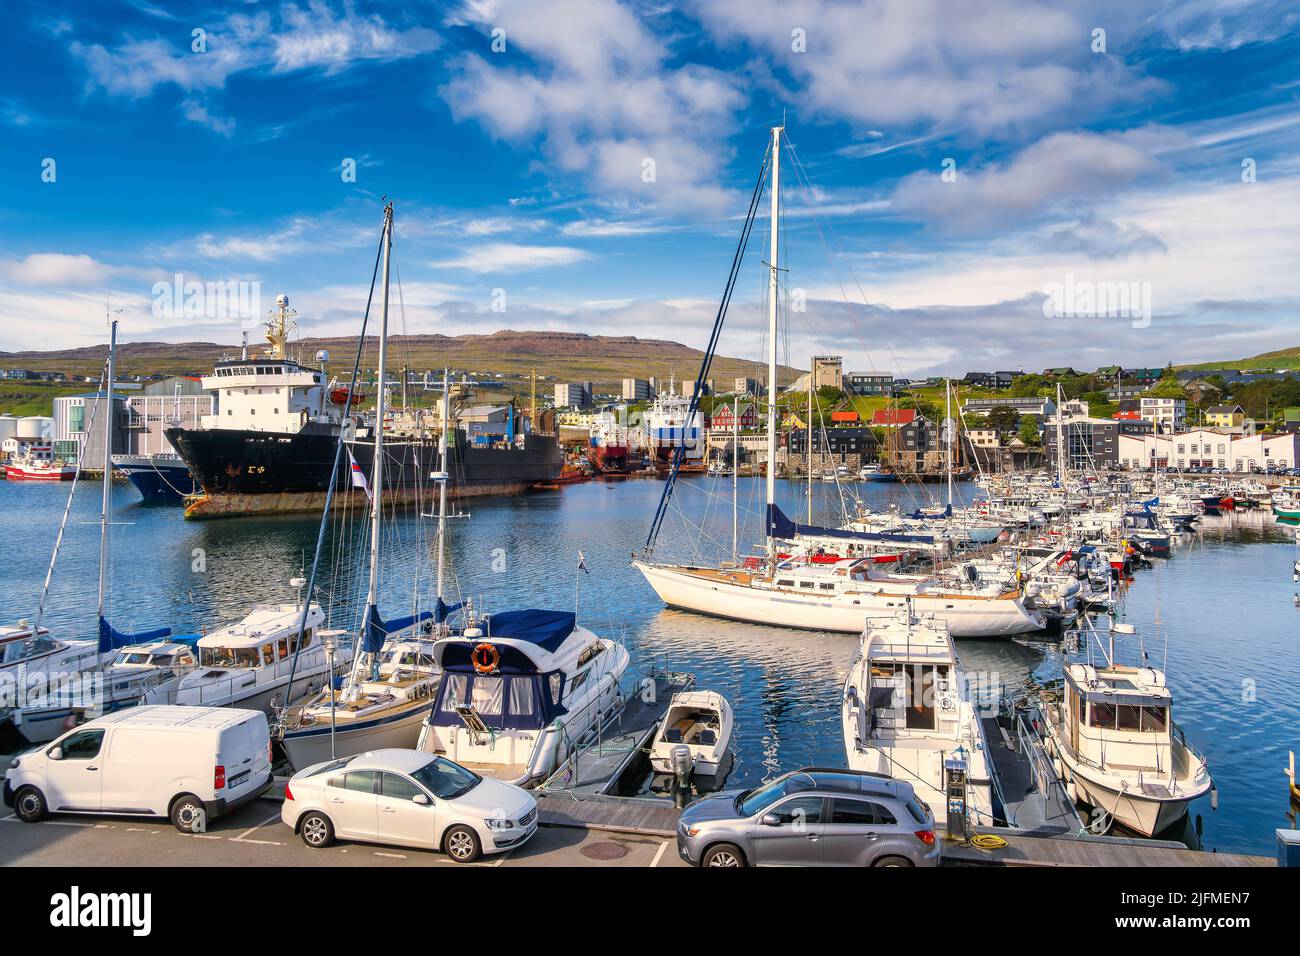 Torshavn old harbor in the Faroe Islands Stock Photo